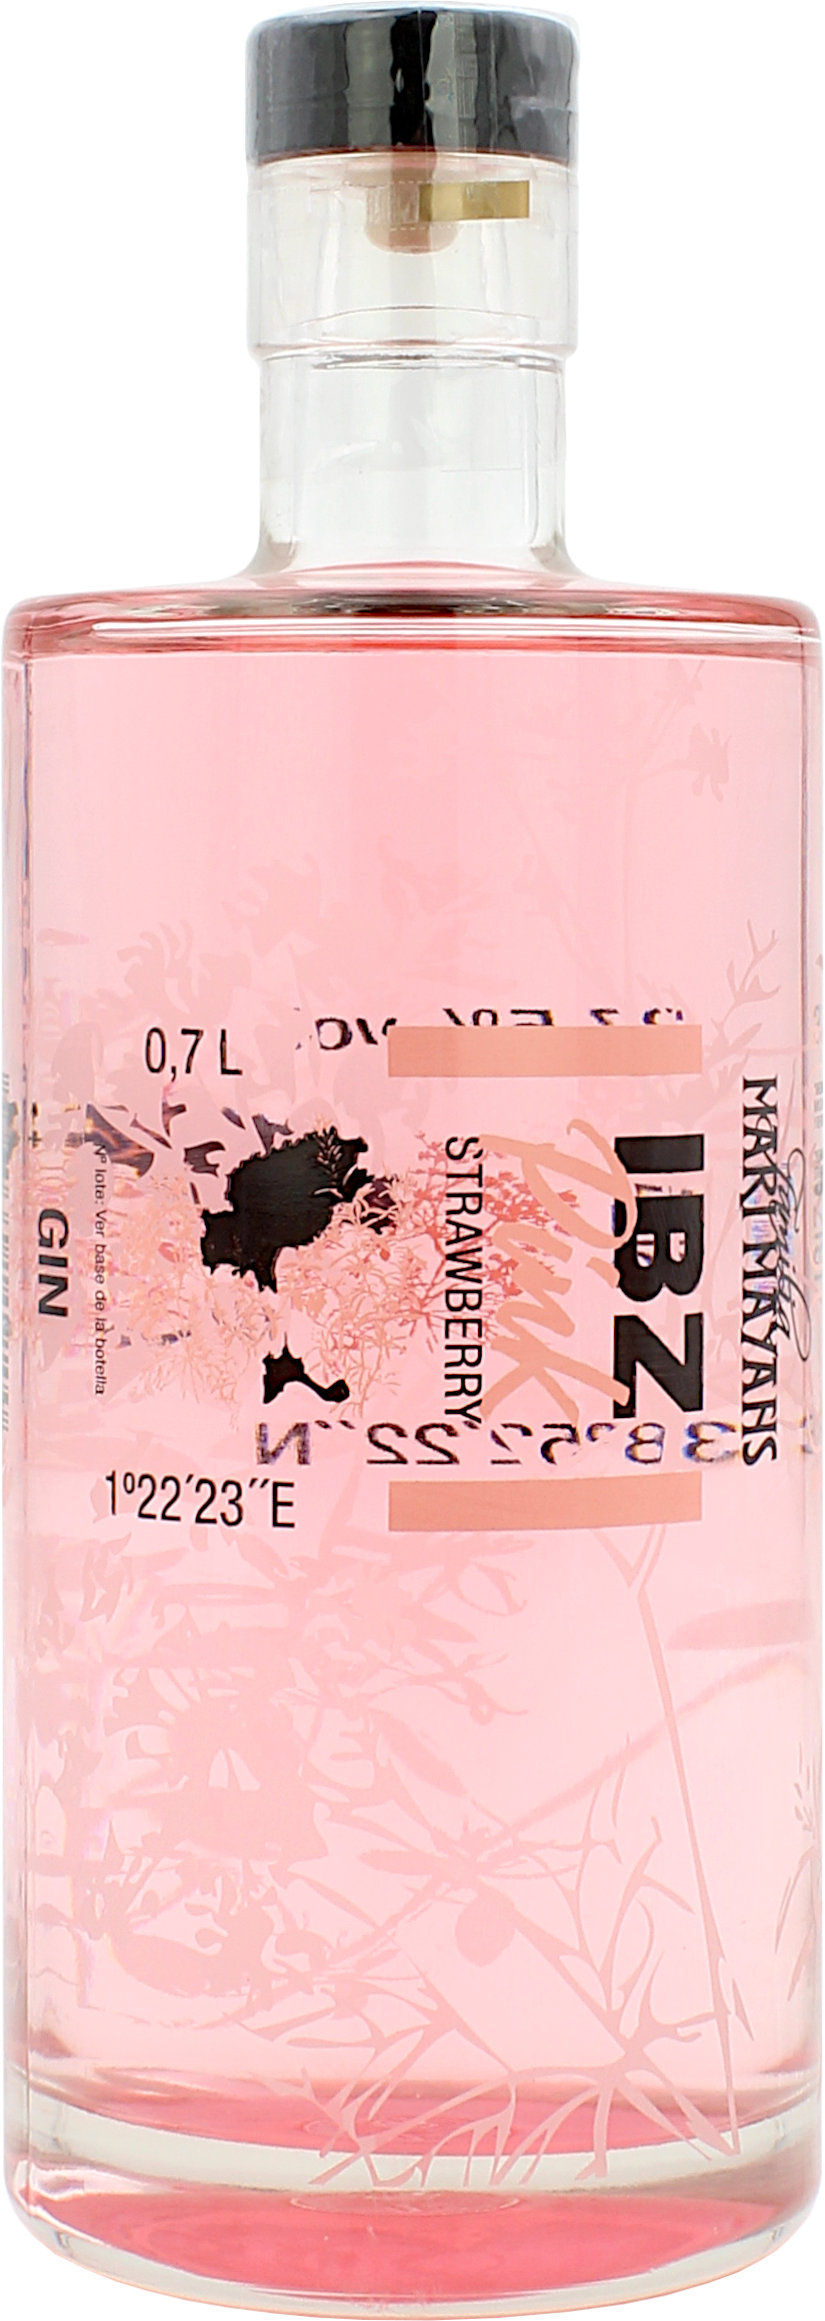 IBZ Ibiza Pink Gin 37.5% 0,7l